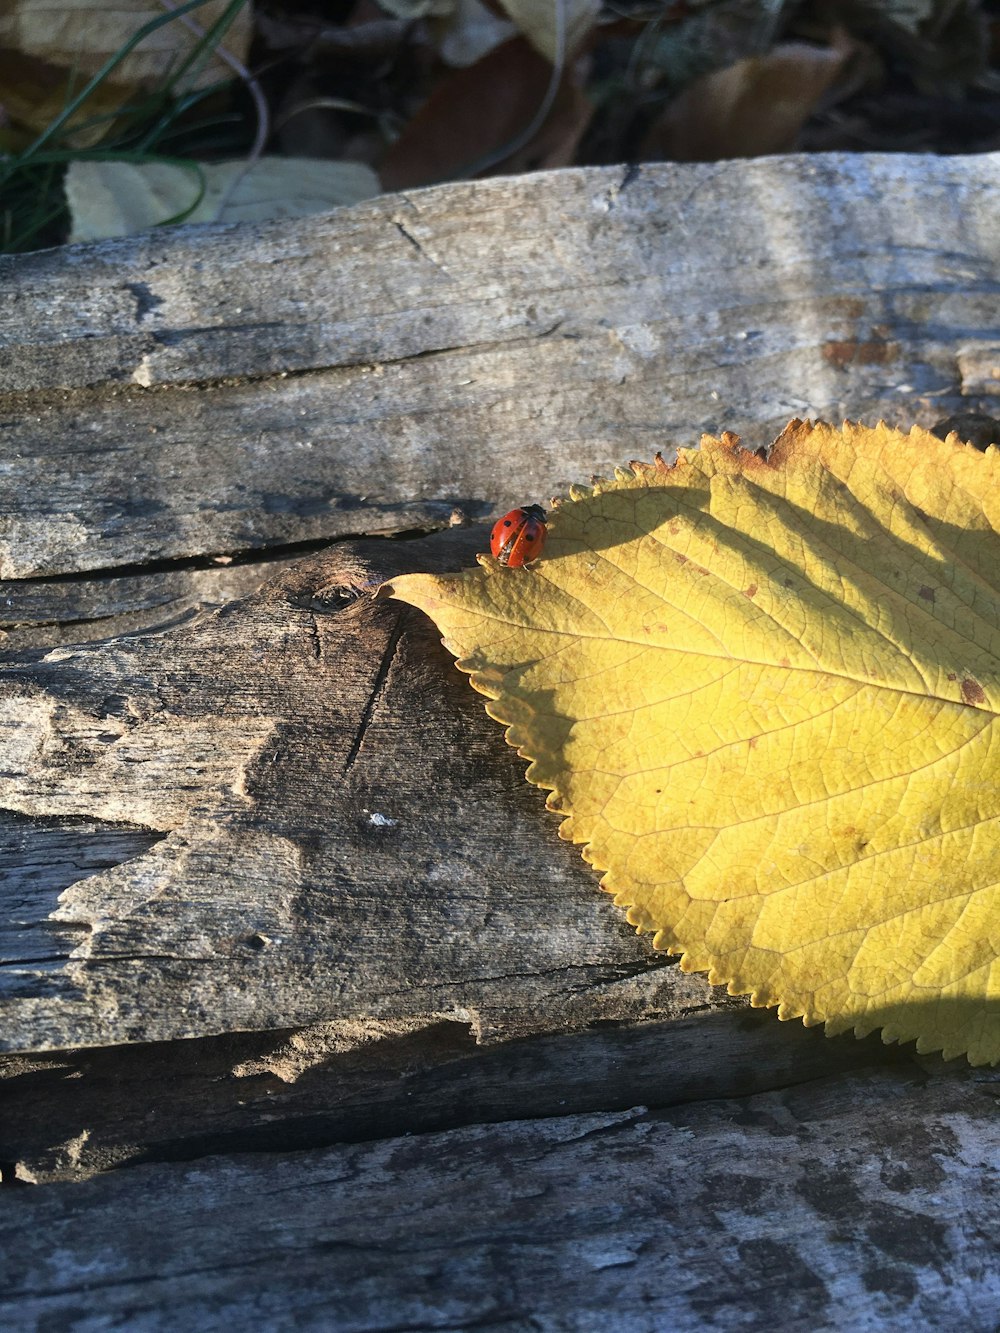 bug on leaf